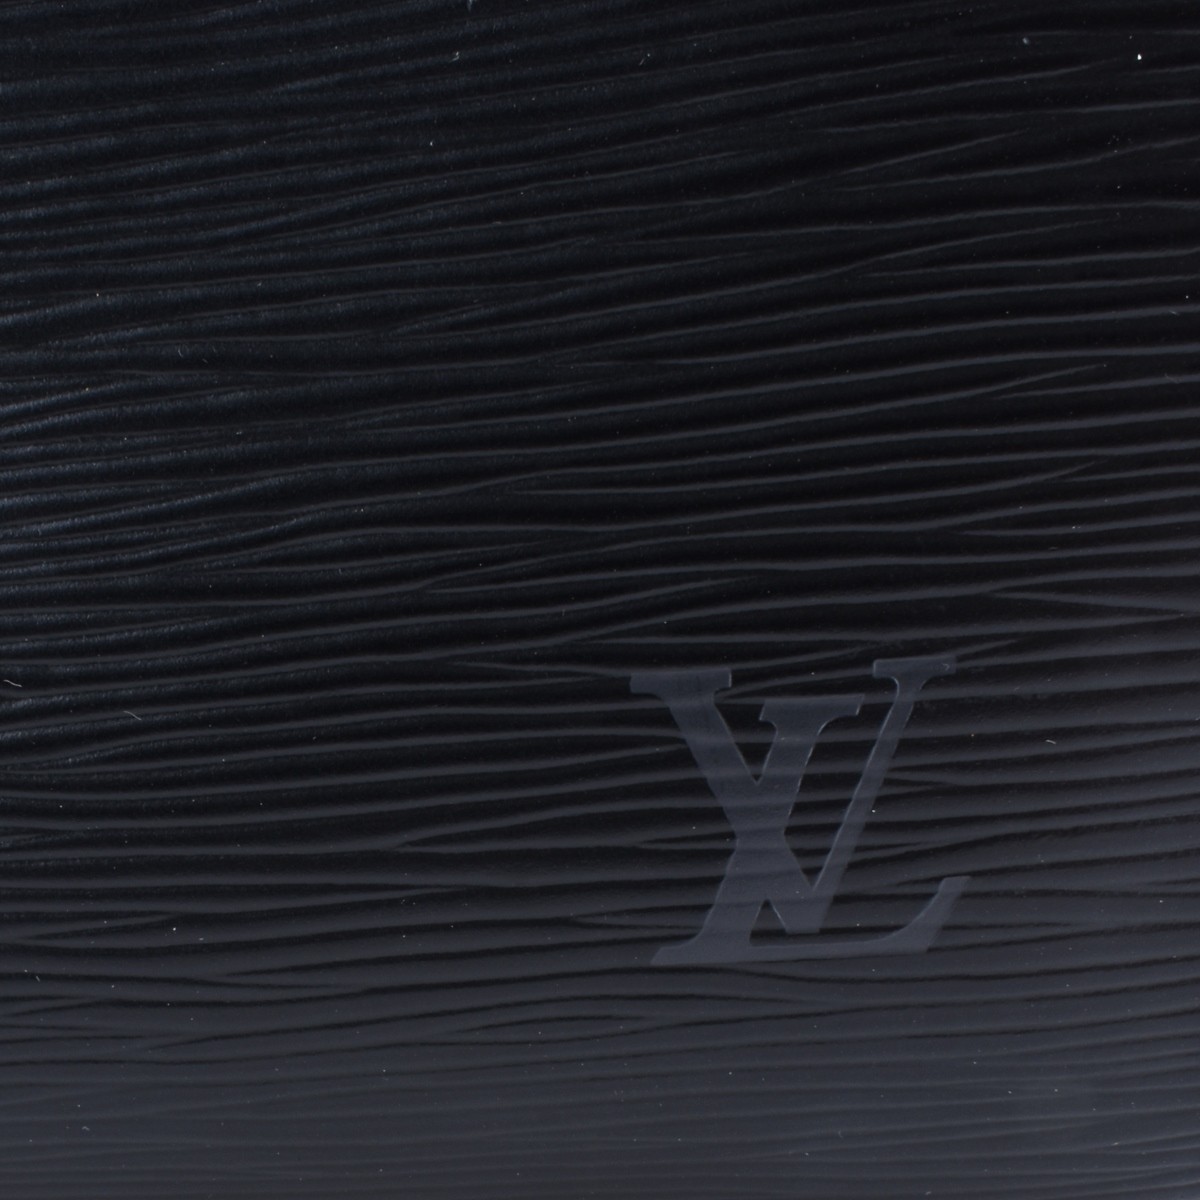 Louis Vuitton Black Epi Leather Pont-Neuf Handbag